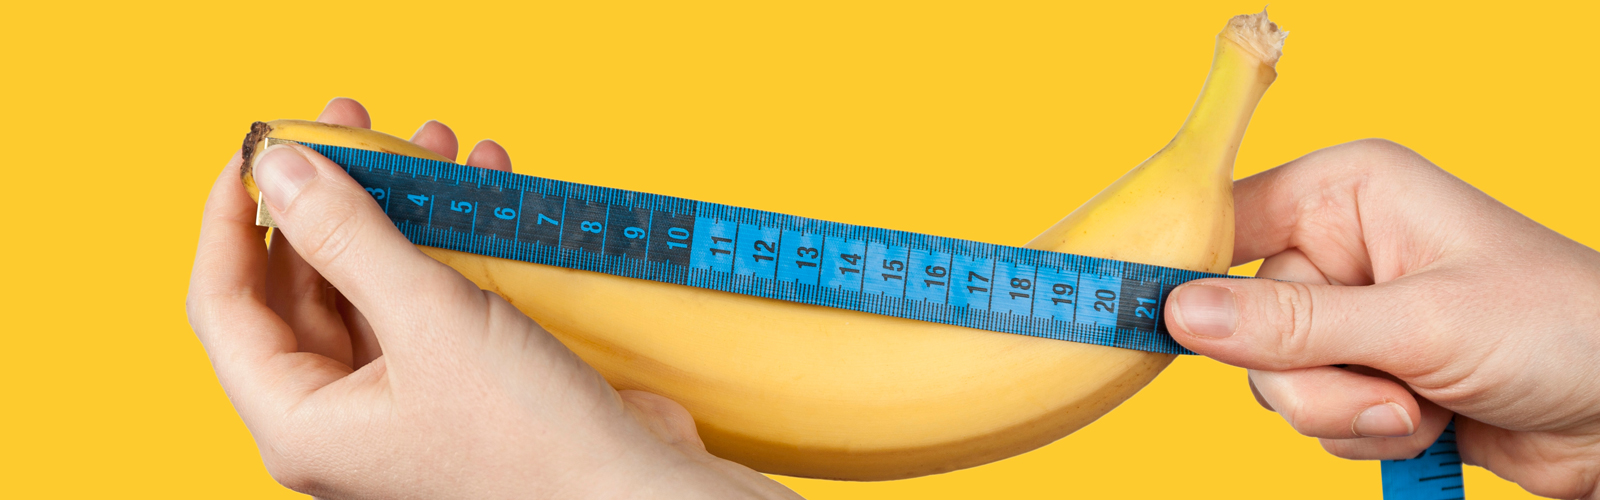 Person measuring a banana